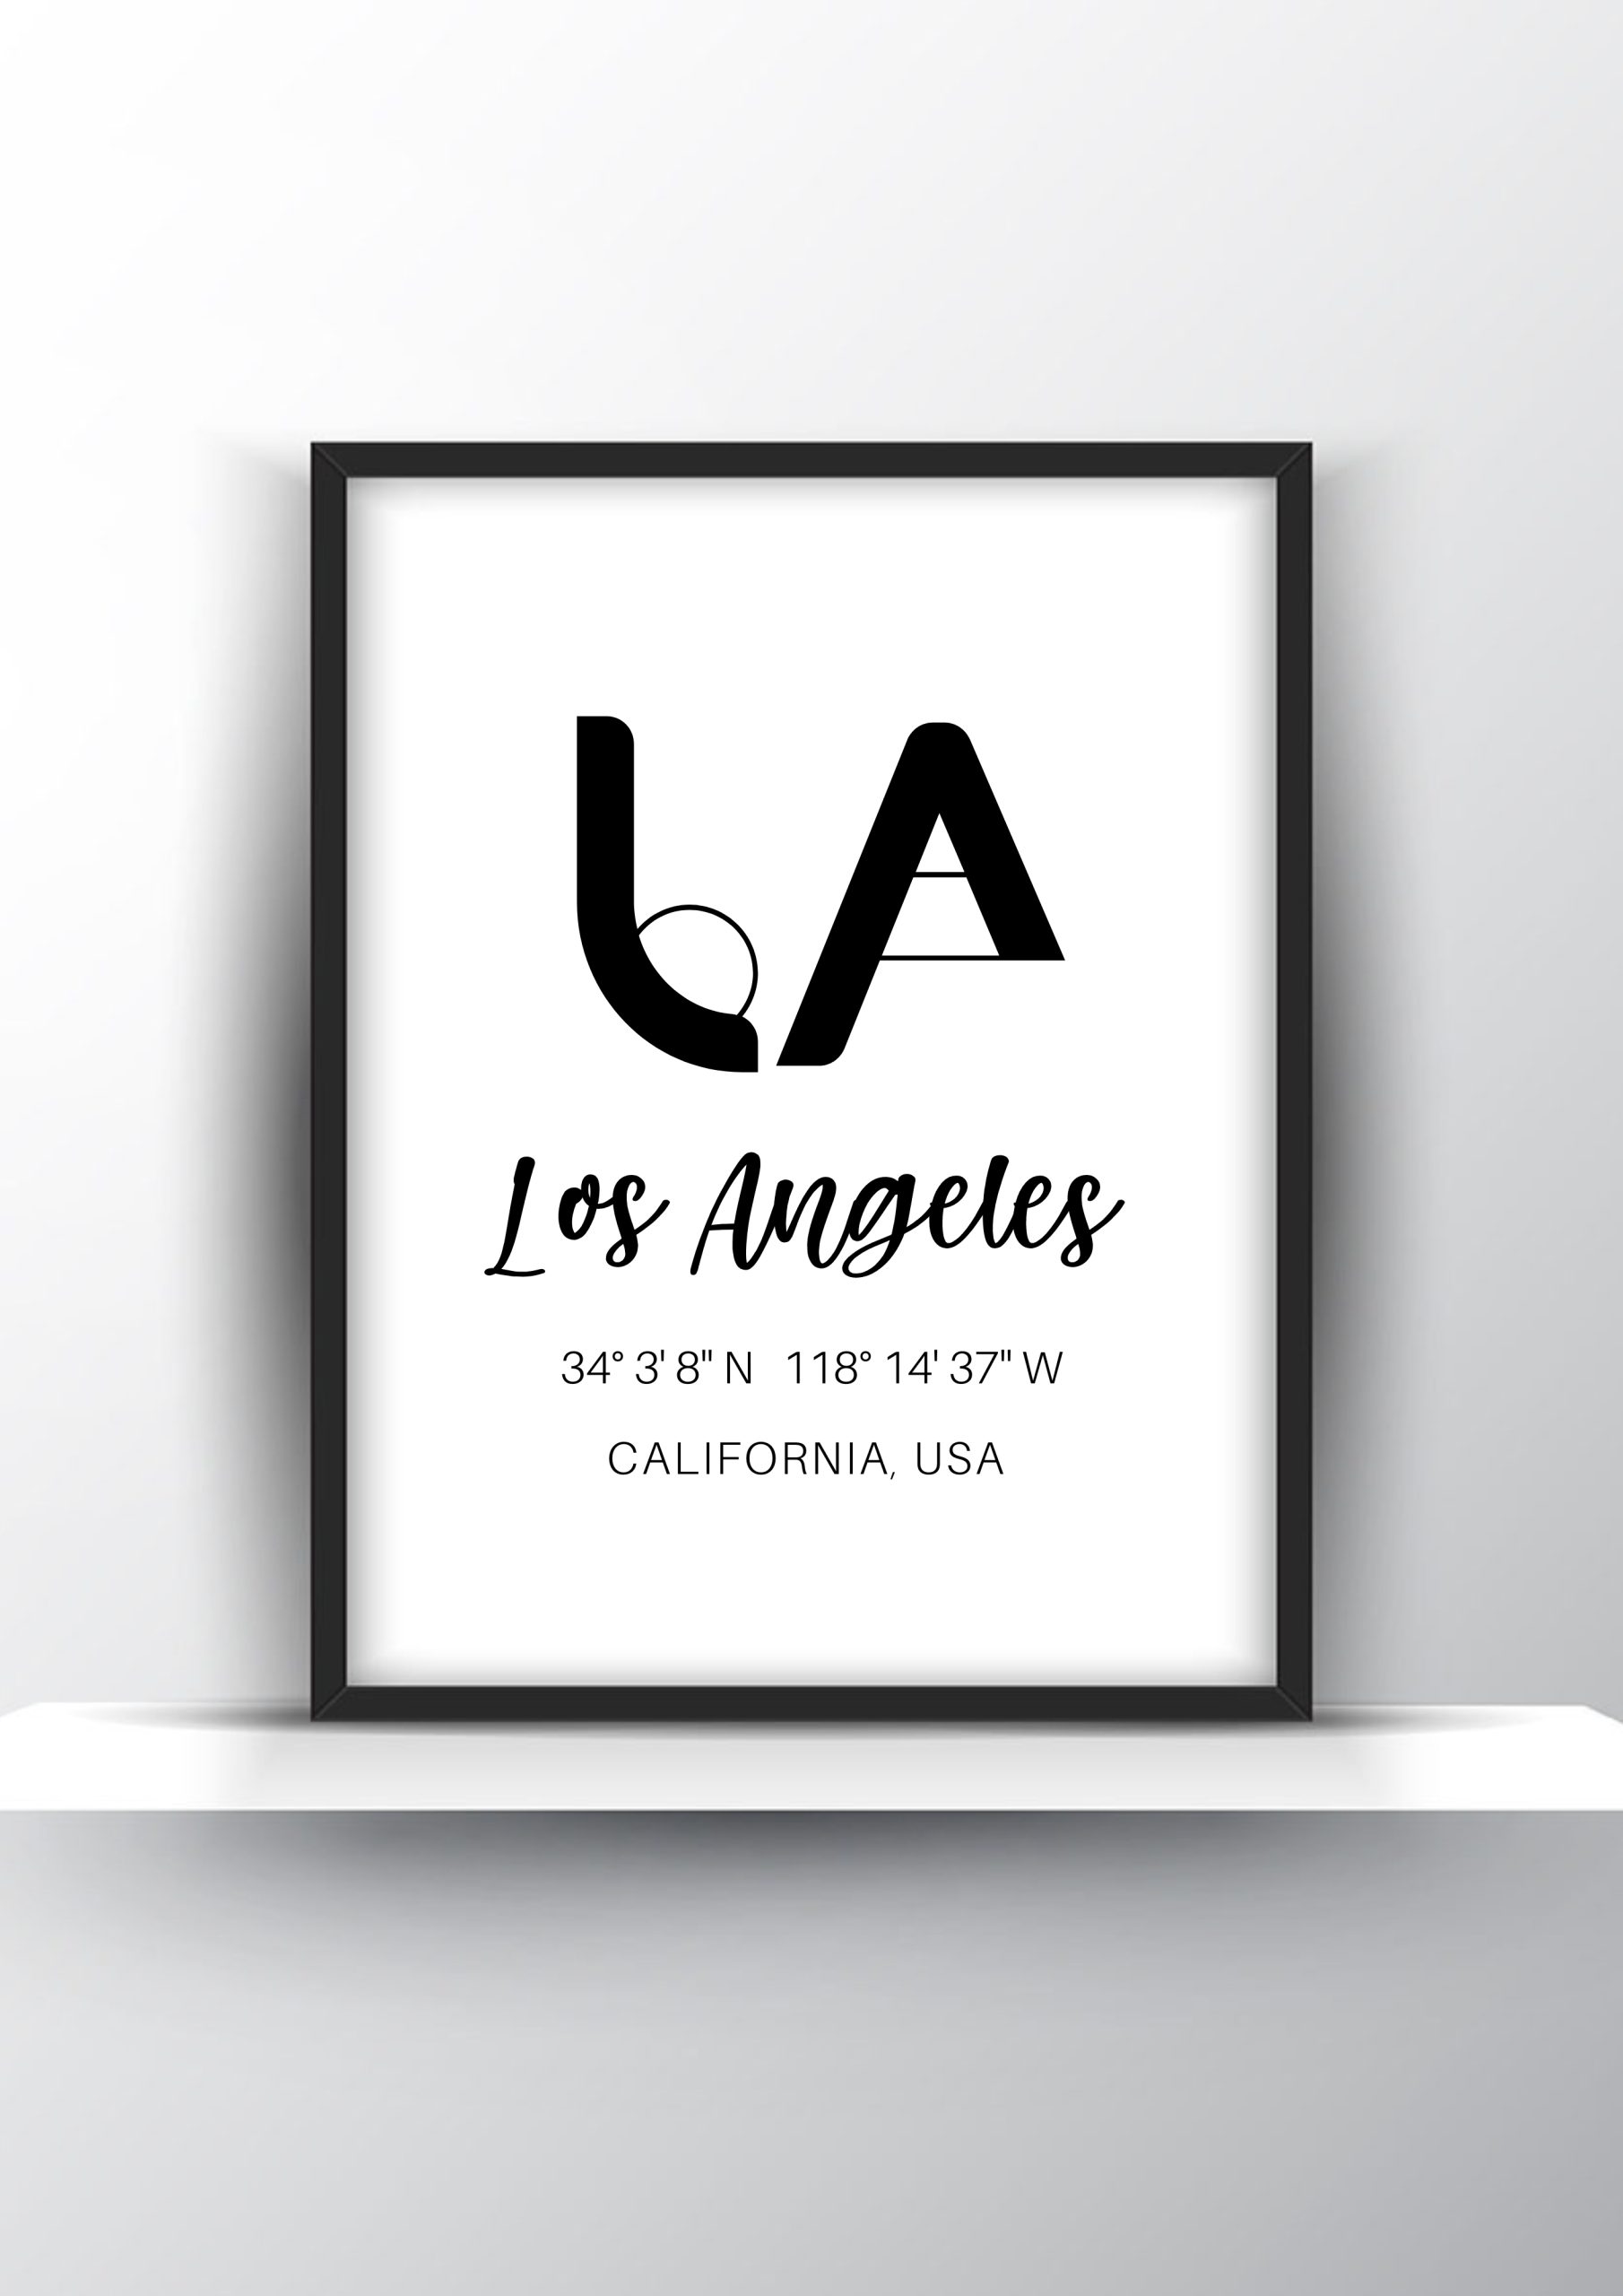 Los Angeles California USA Print Printable Wall Art